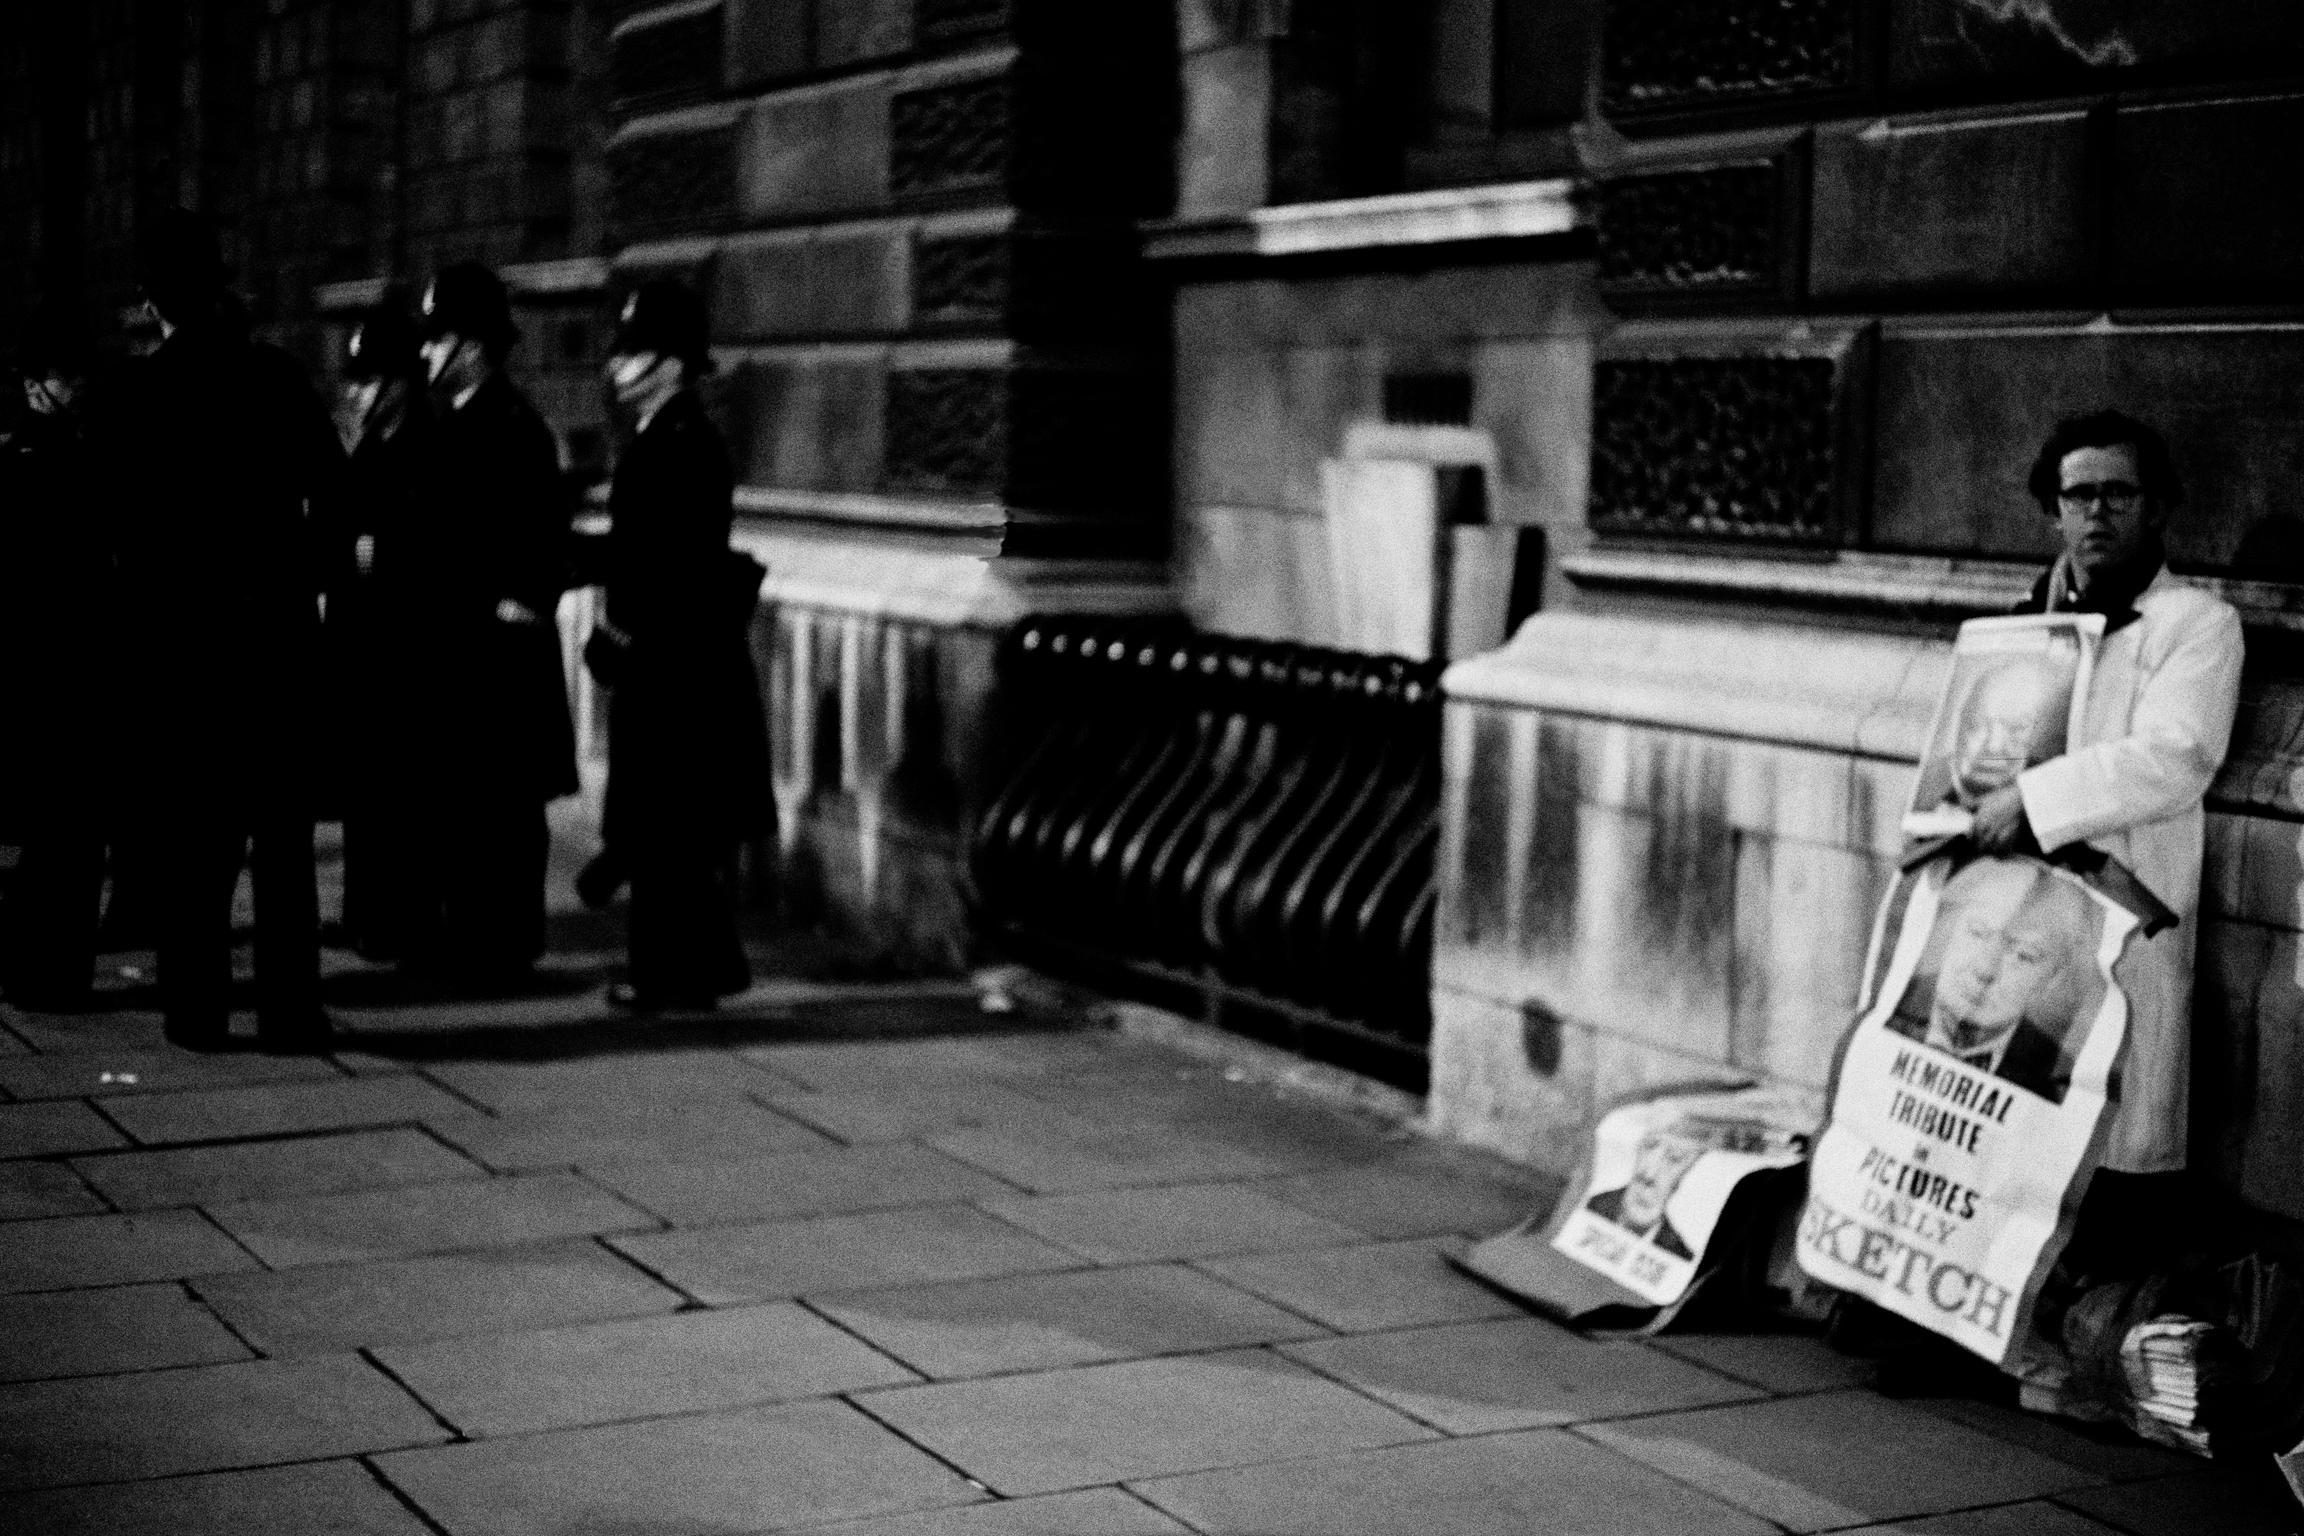 Winston Churchill funeral. Early morning. Newspaper seller. London, UK